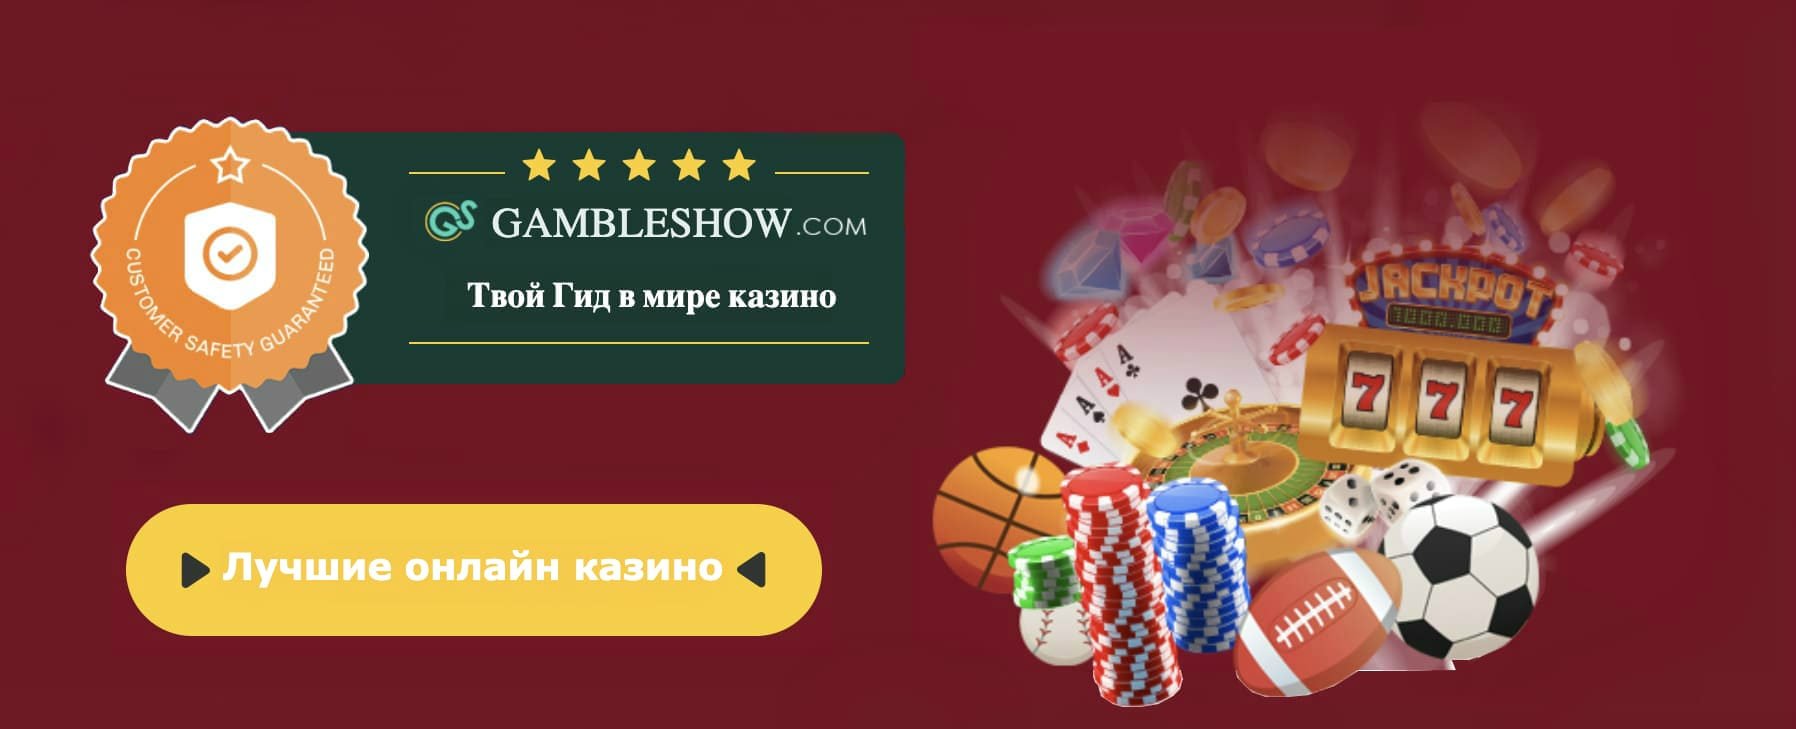 Играть бесплатно классические слот автоматы онлайн покер за деньги